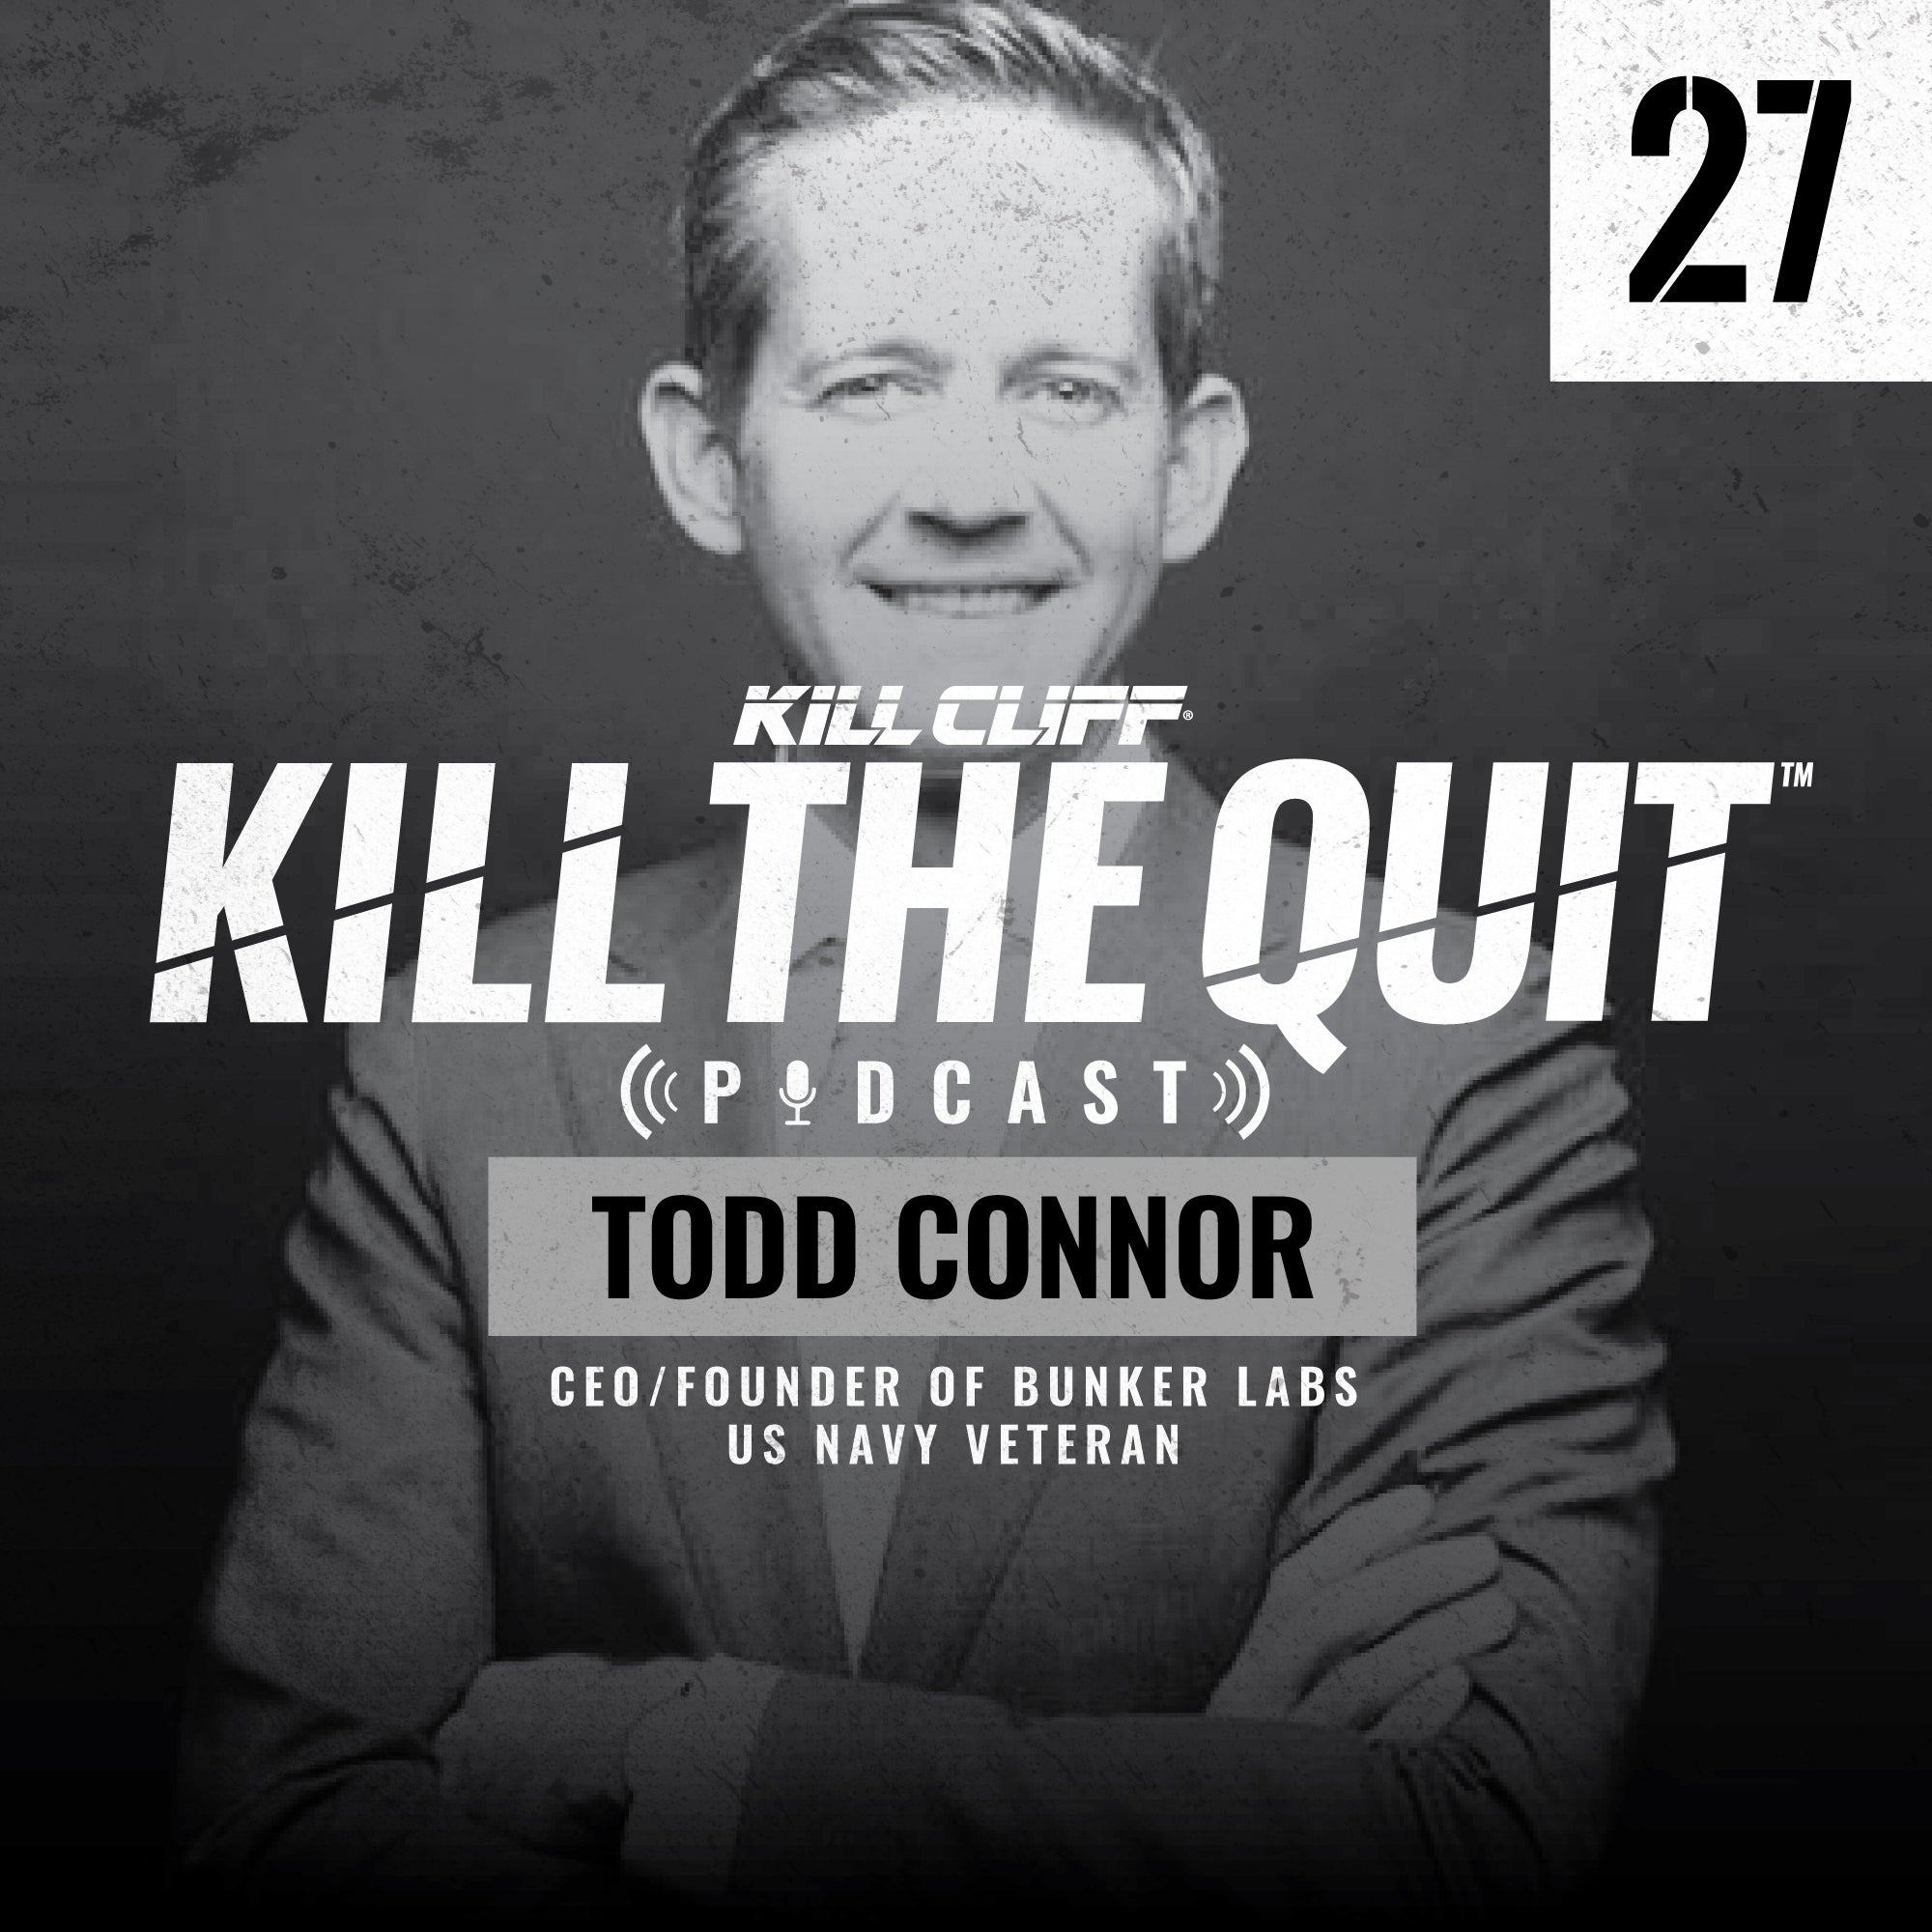 PODCAST Ep. 027 - Todd Connor - Kill Cliff